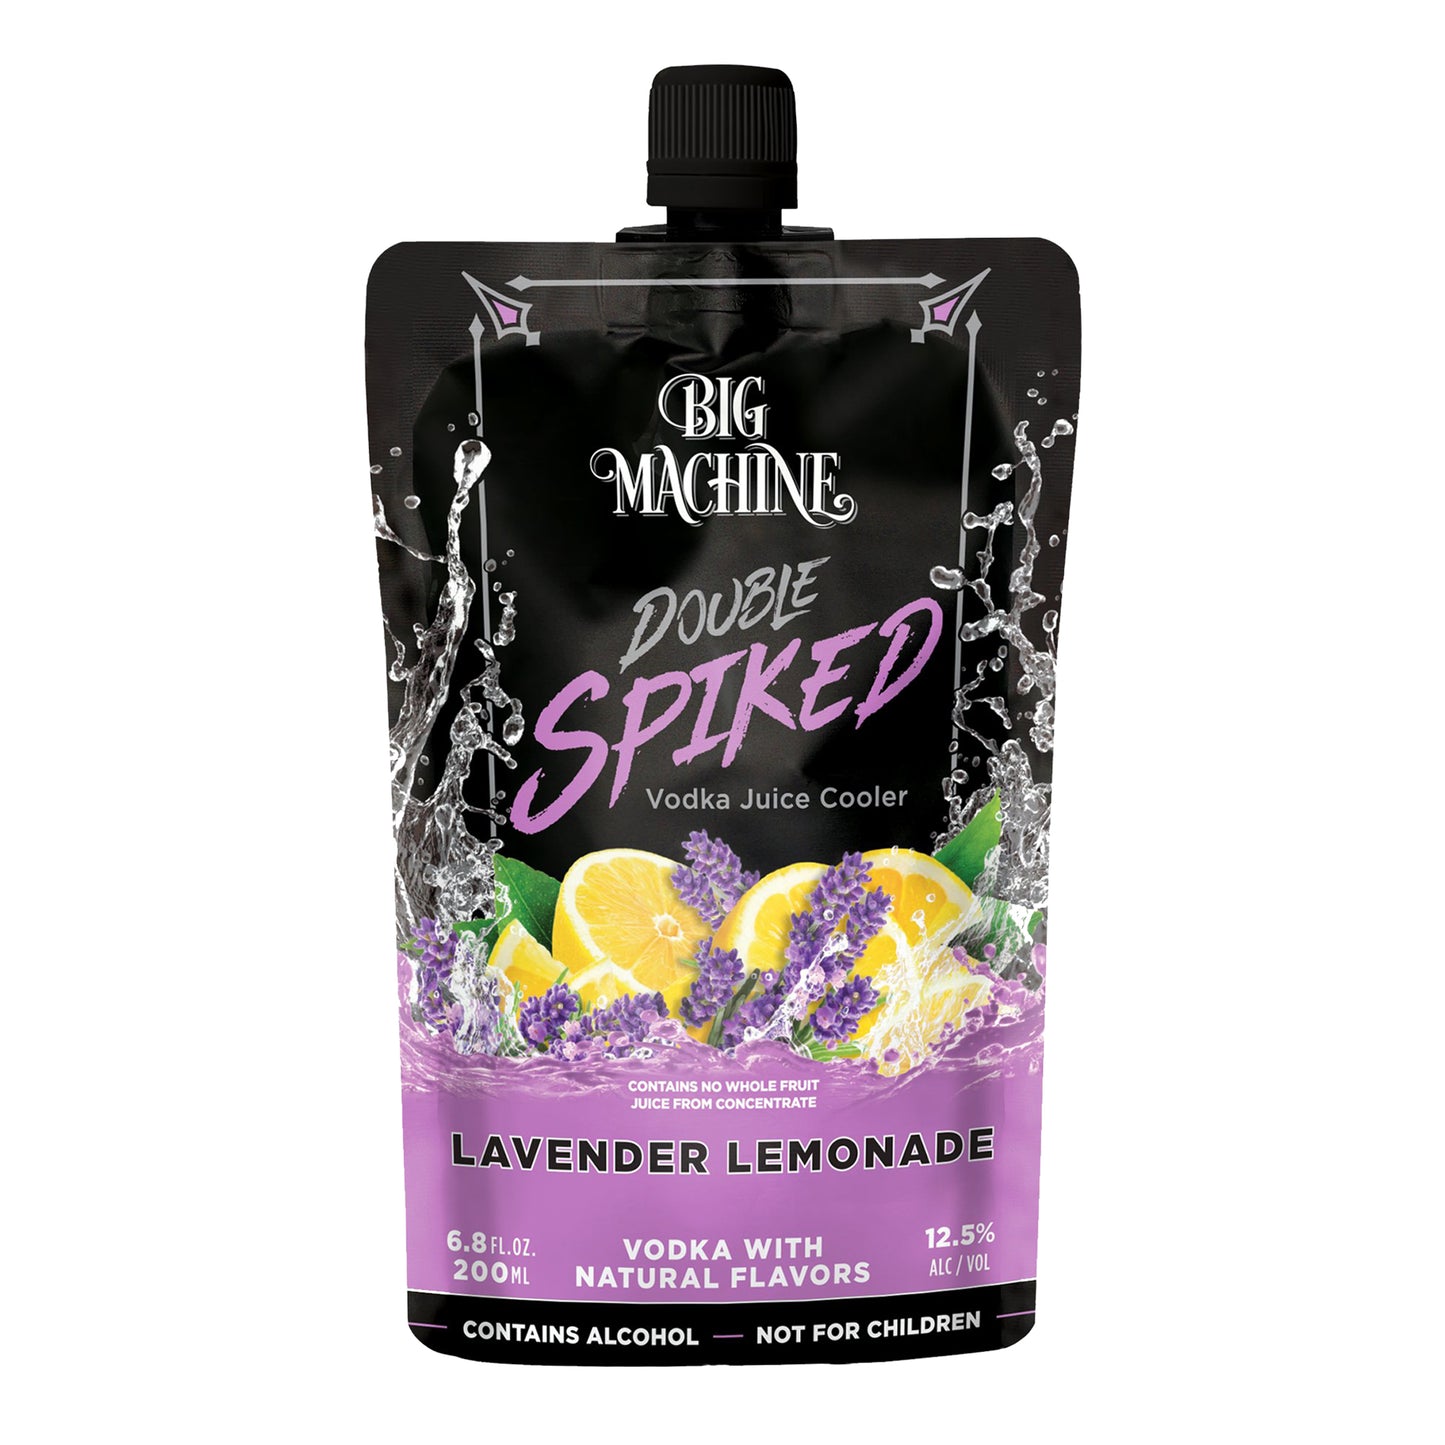 Double Spiked Vodka Juice Cooler Lavender Lemonade - 24 Pack